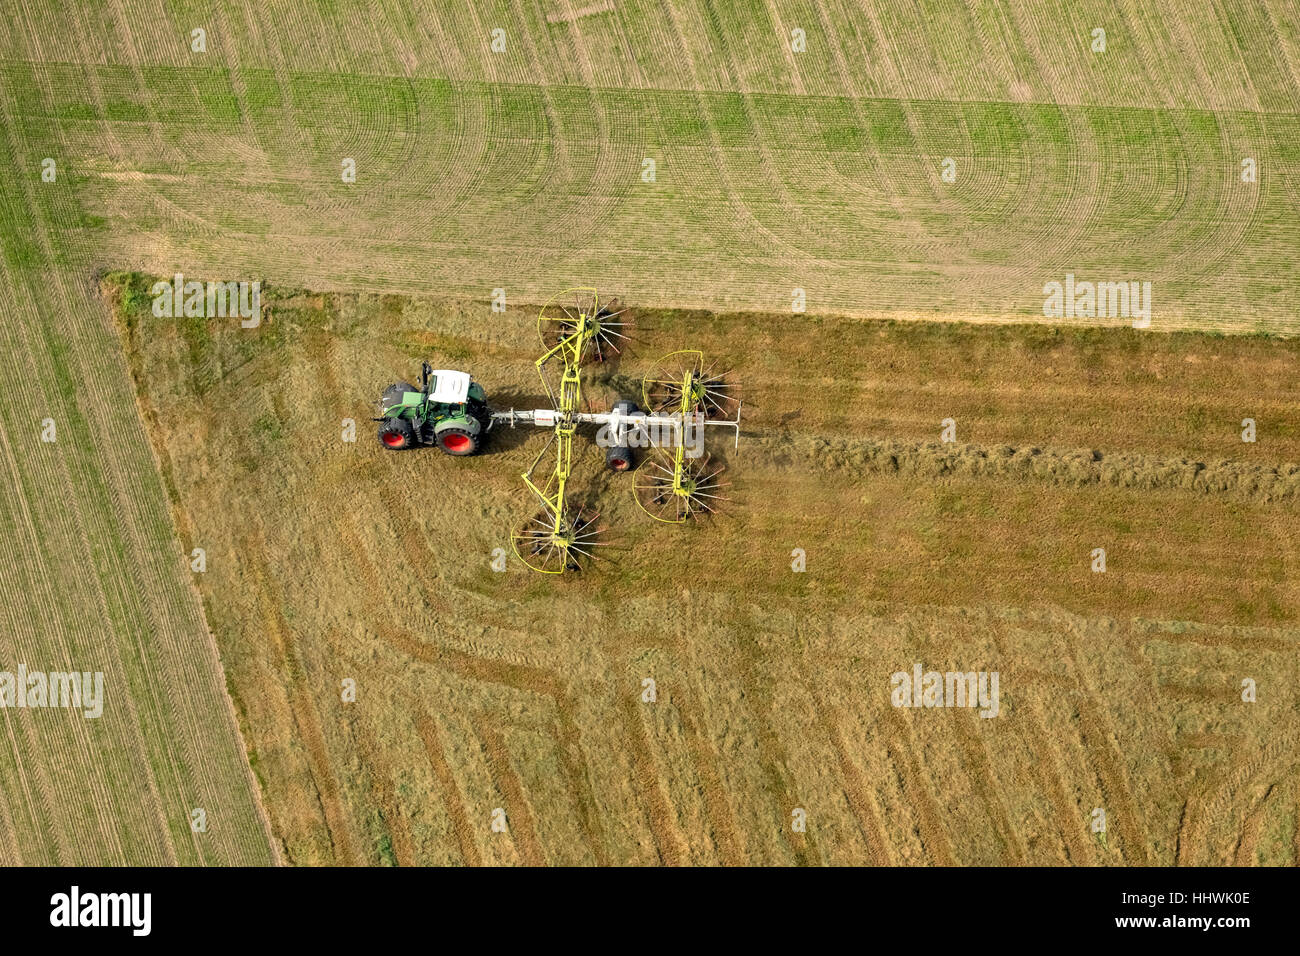 Tracteur avec des râteaux à foin, de l'agriculture, des champs, de la Ruhr, en Rhénanie du Nord-Westphalie, Allemagne Banque D'Images